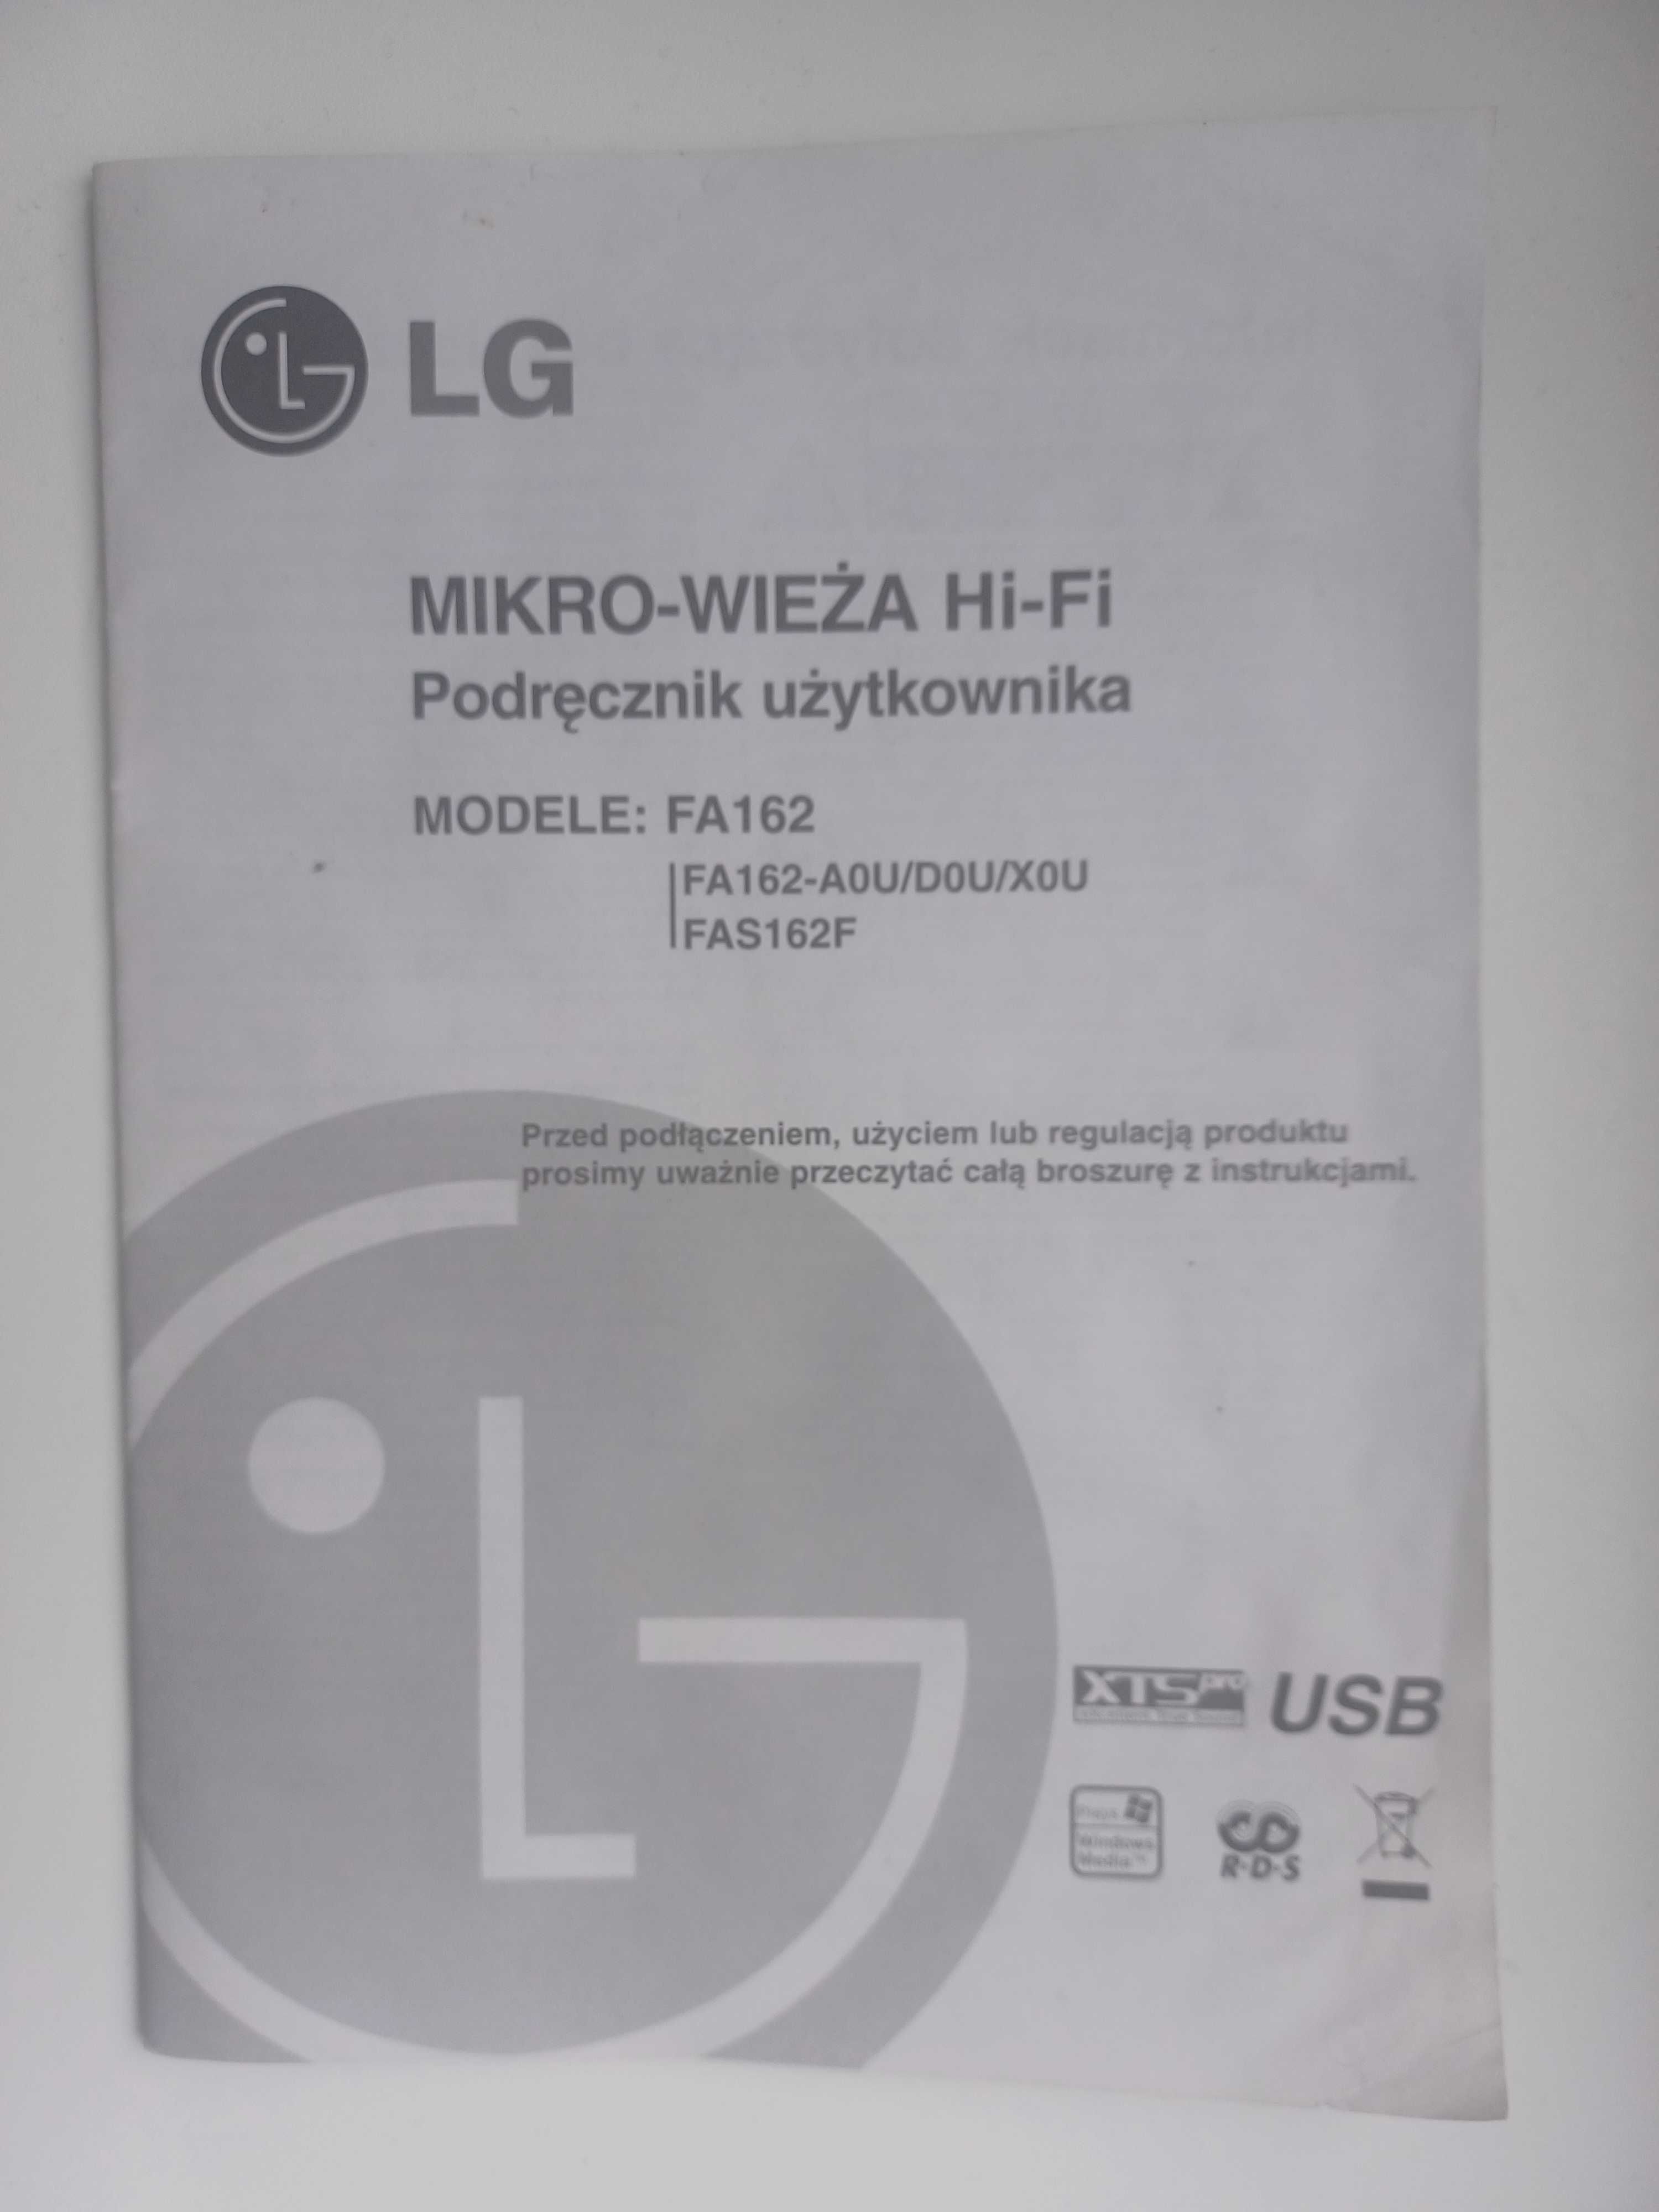 Mikro-wieża HI-FI LG FA162